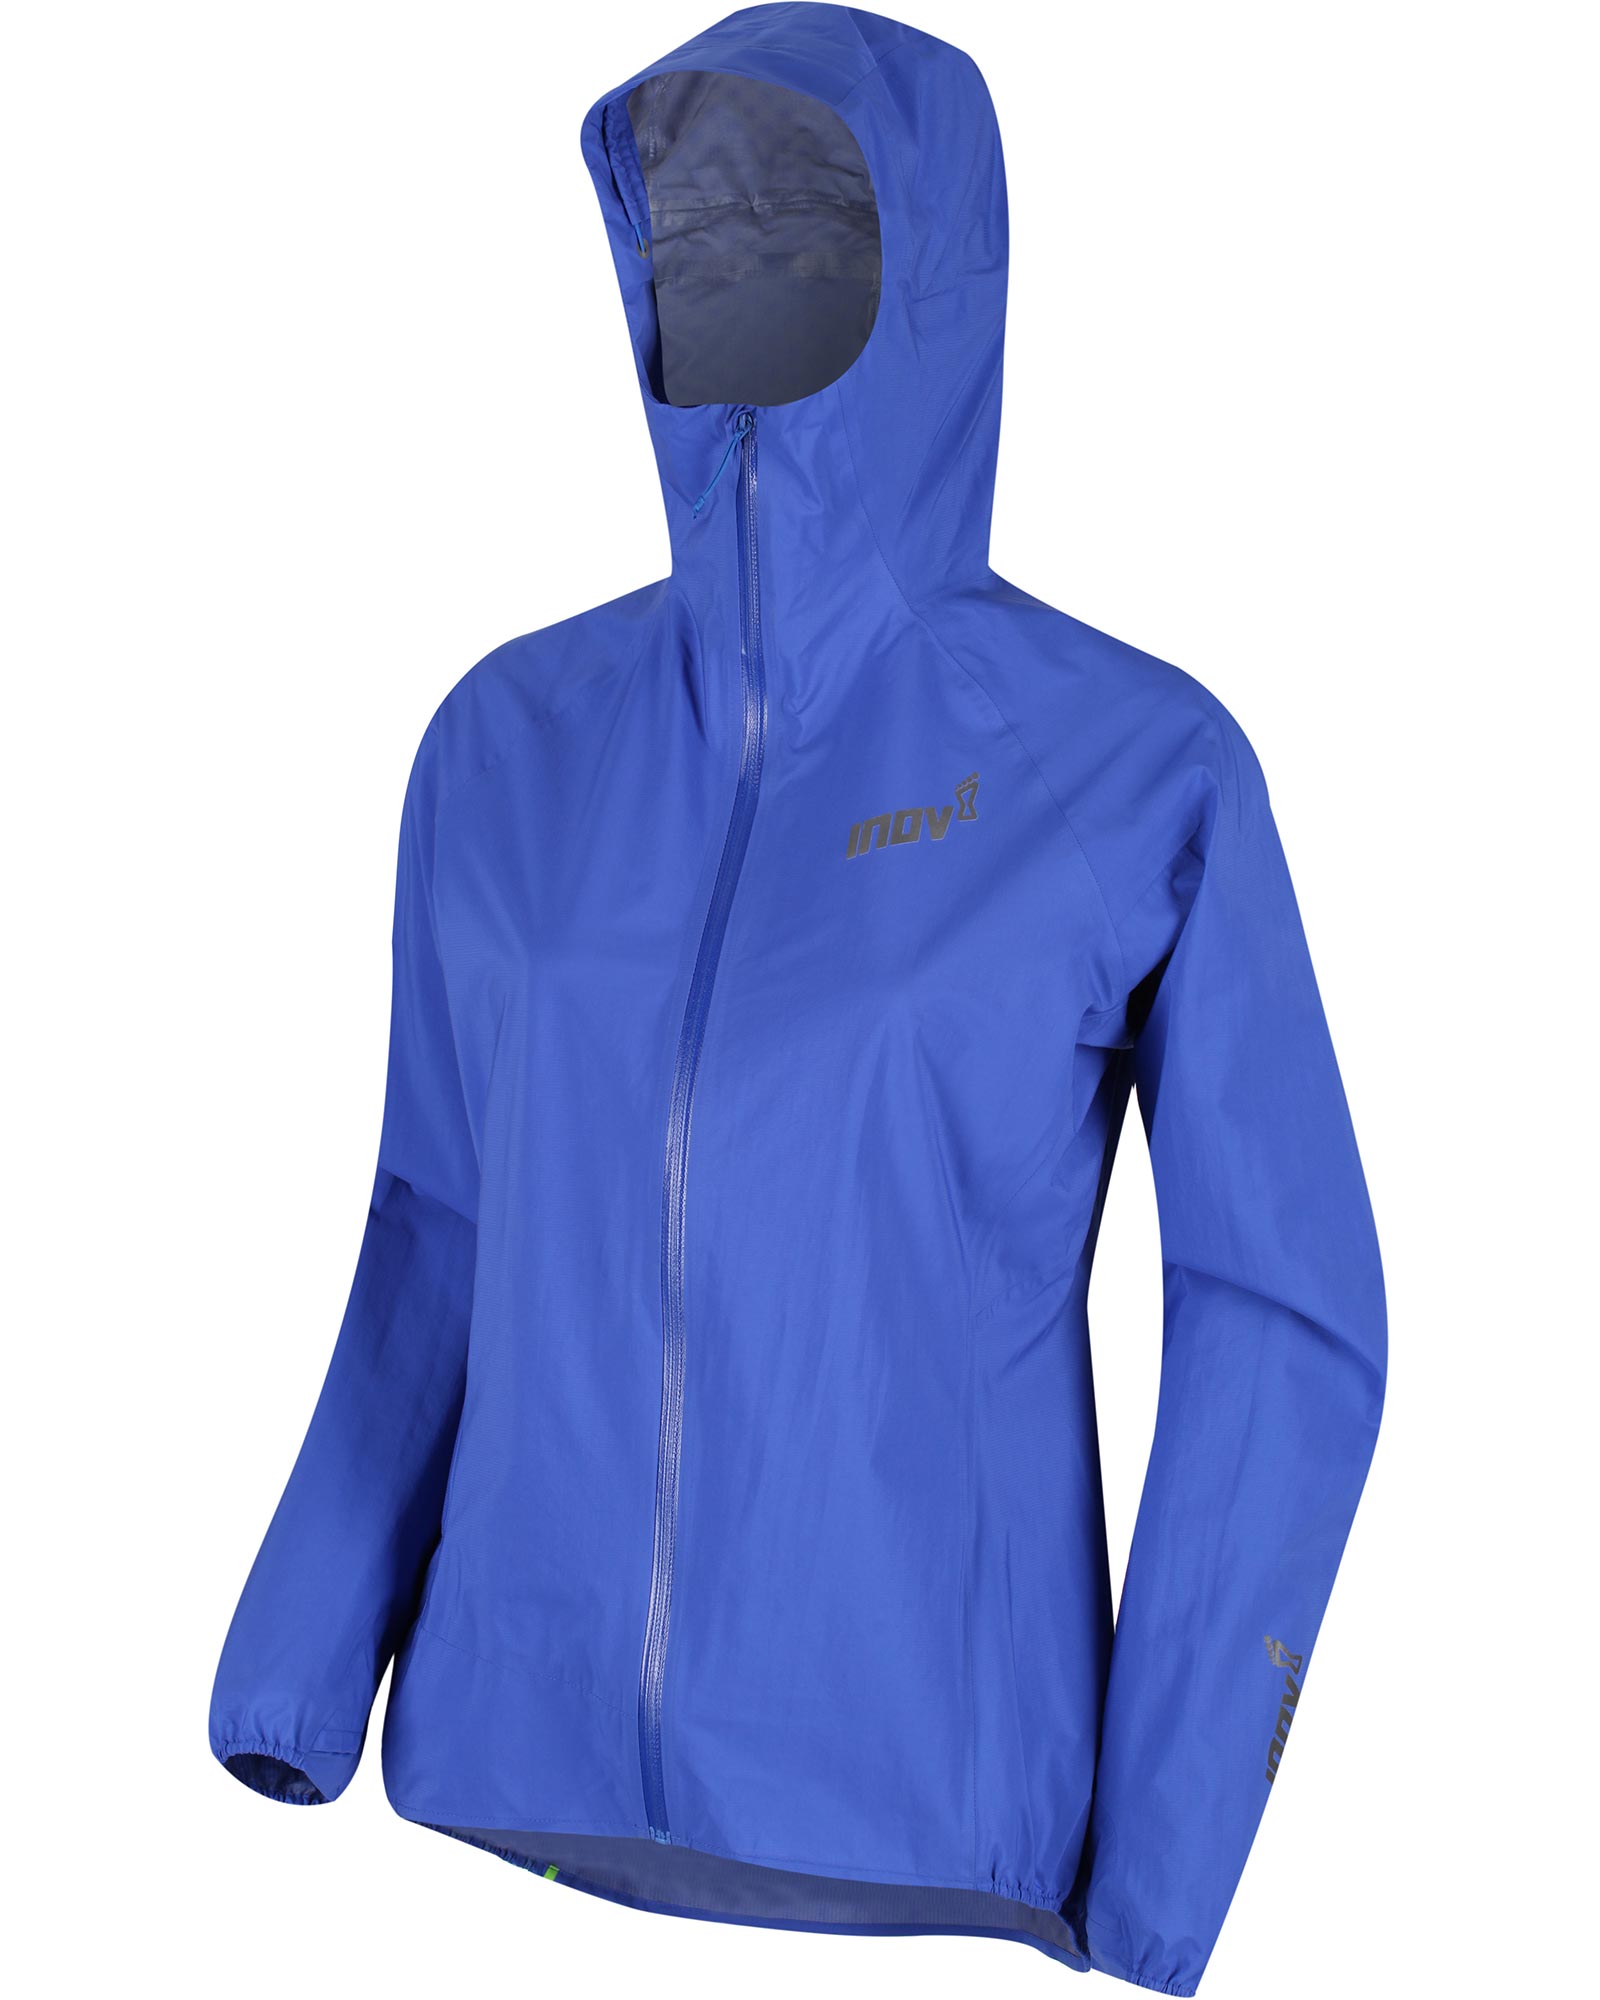 Inov 8 Full Zip Stormshell Women’s Jacket - Blue 8